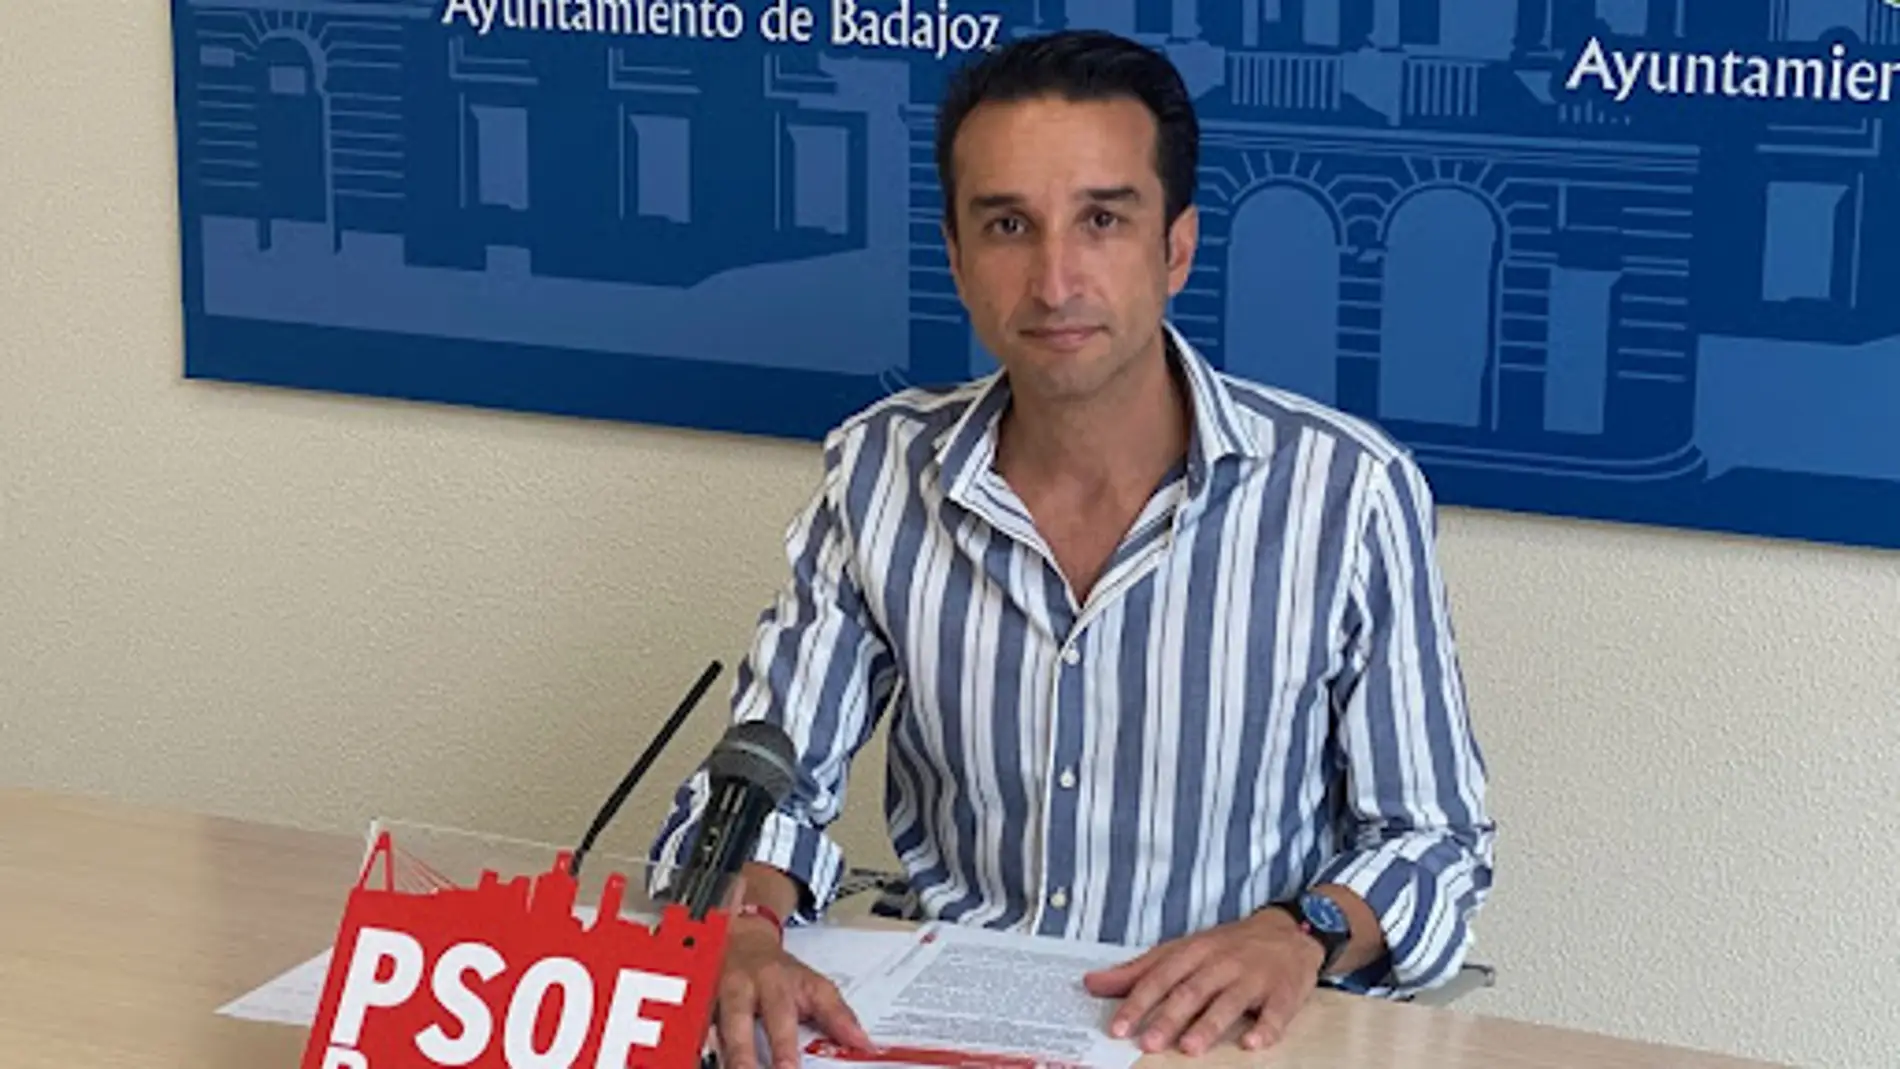 El PSOE pide un Reglamento de Administración Electrónica en el Ayuntamiento de Badajoz